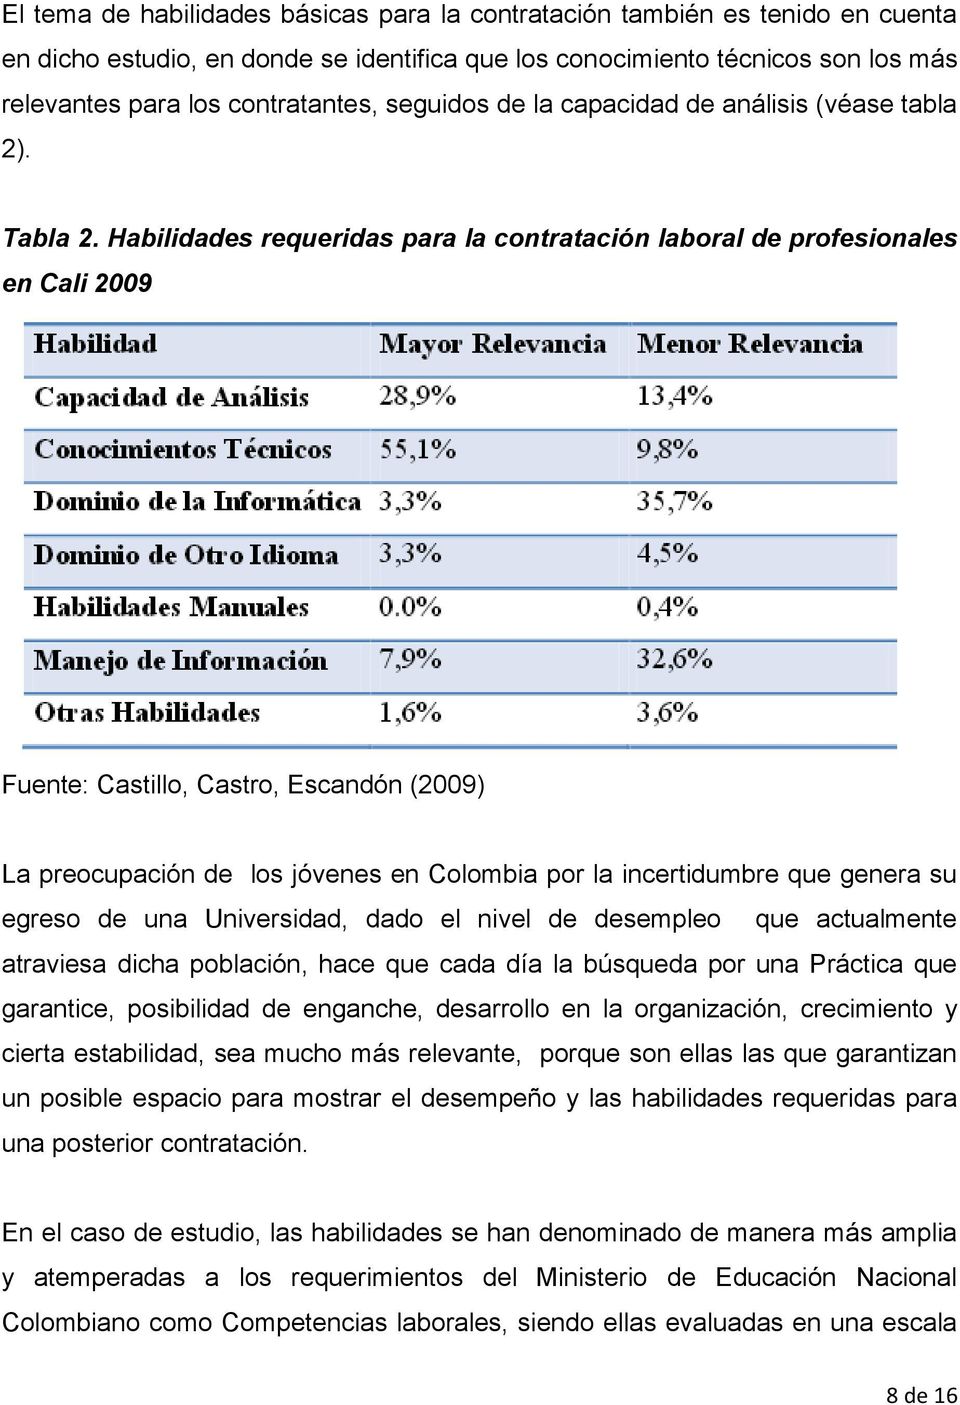 Habilidades requeridas para la contratación laboral de profesionales en Cali 2009 Fuente: Castillo, Castro, Escandón (2009) La preocupación de los jóvenes en Colombia por la incertidumbre que genera